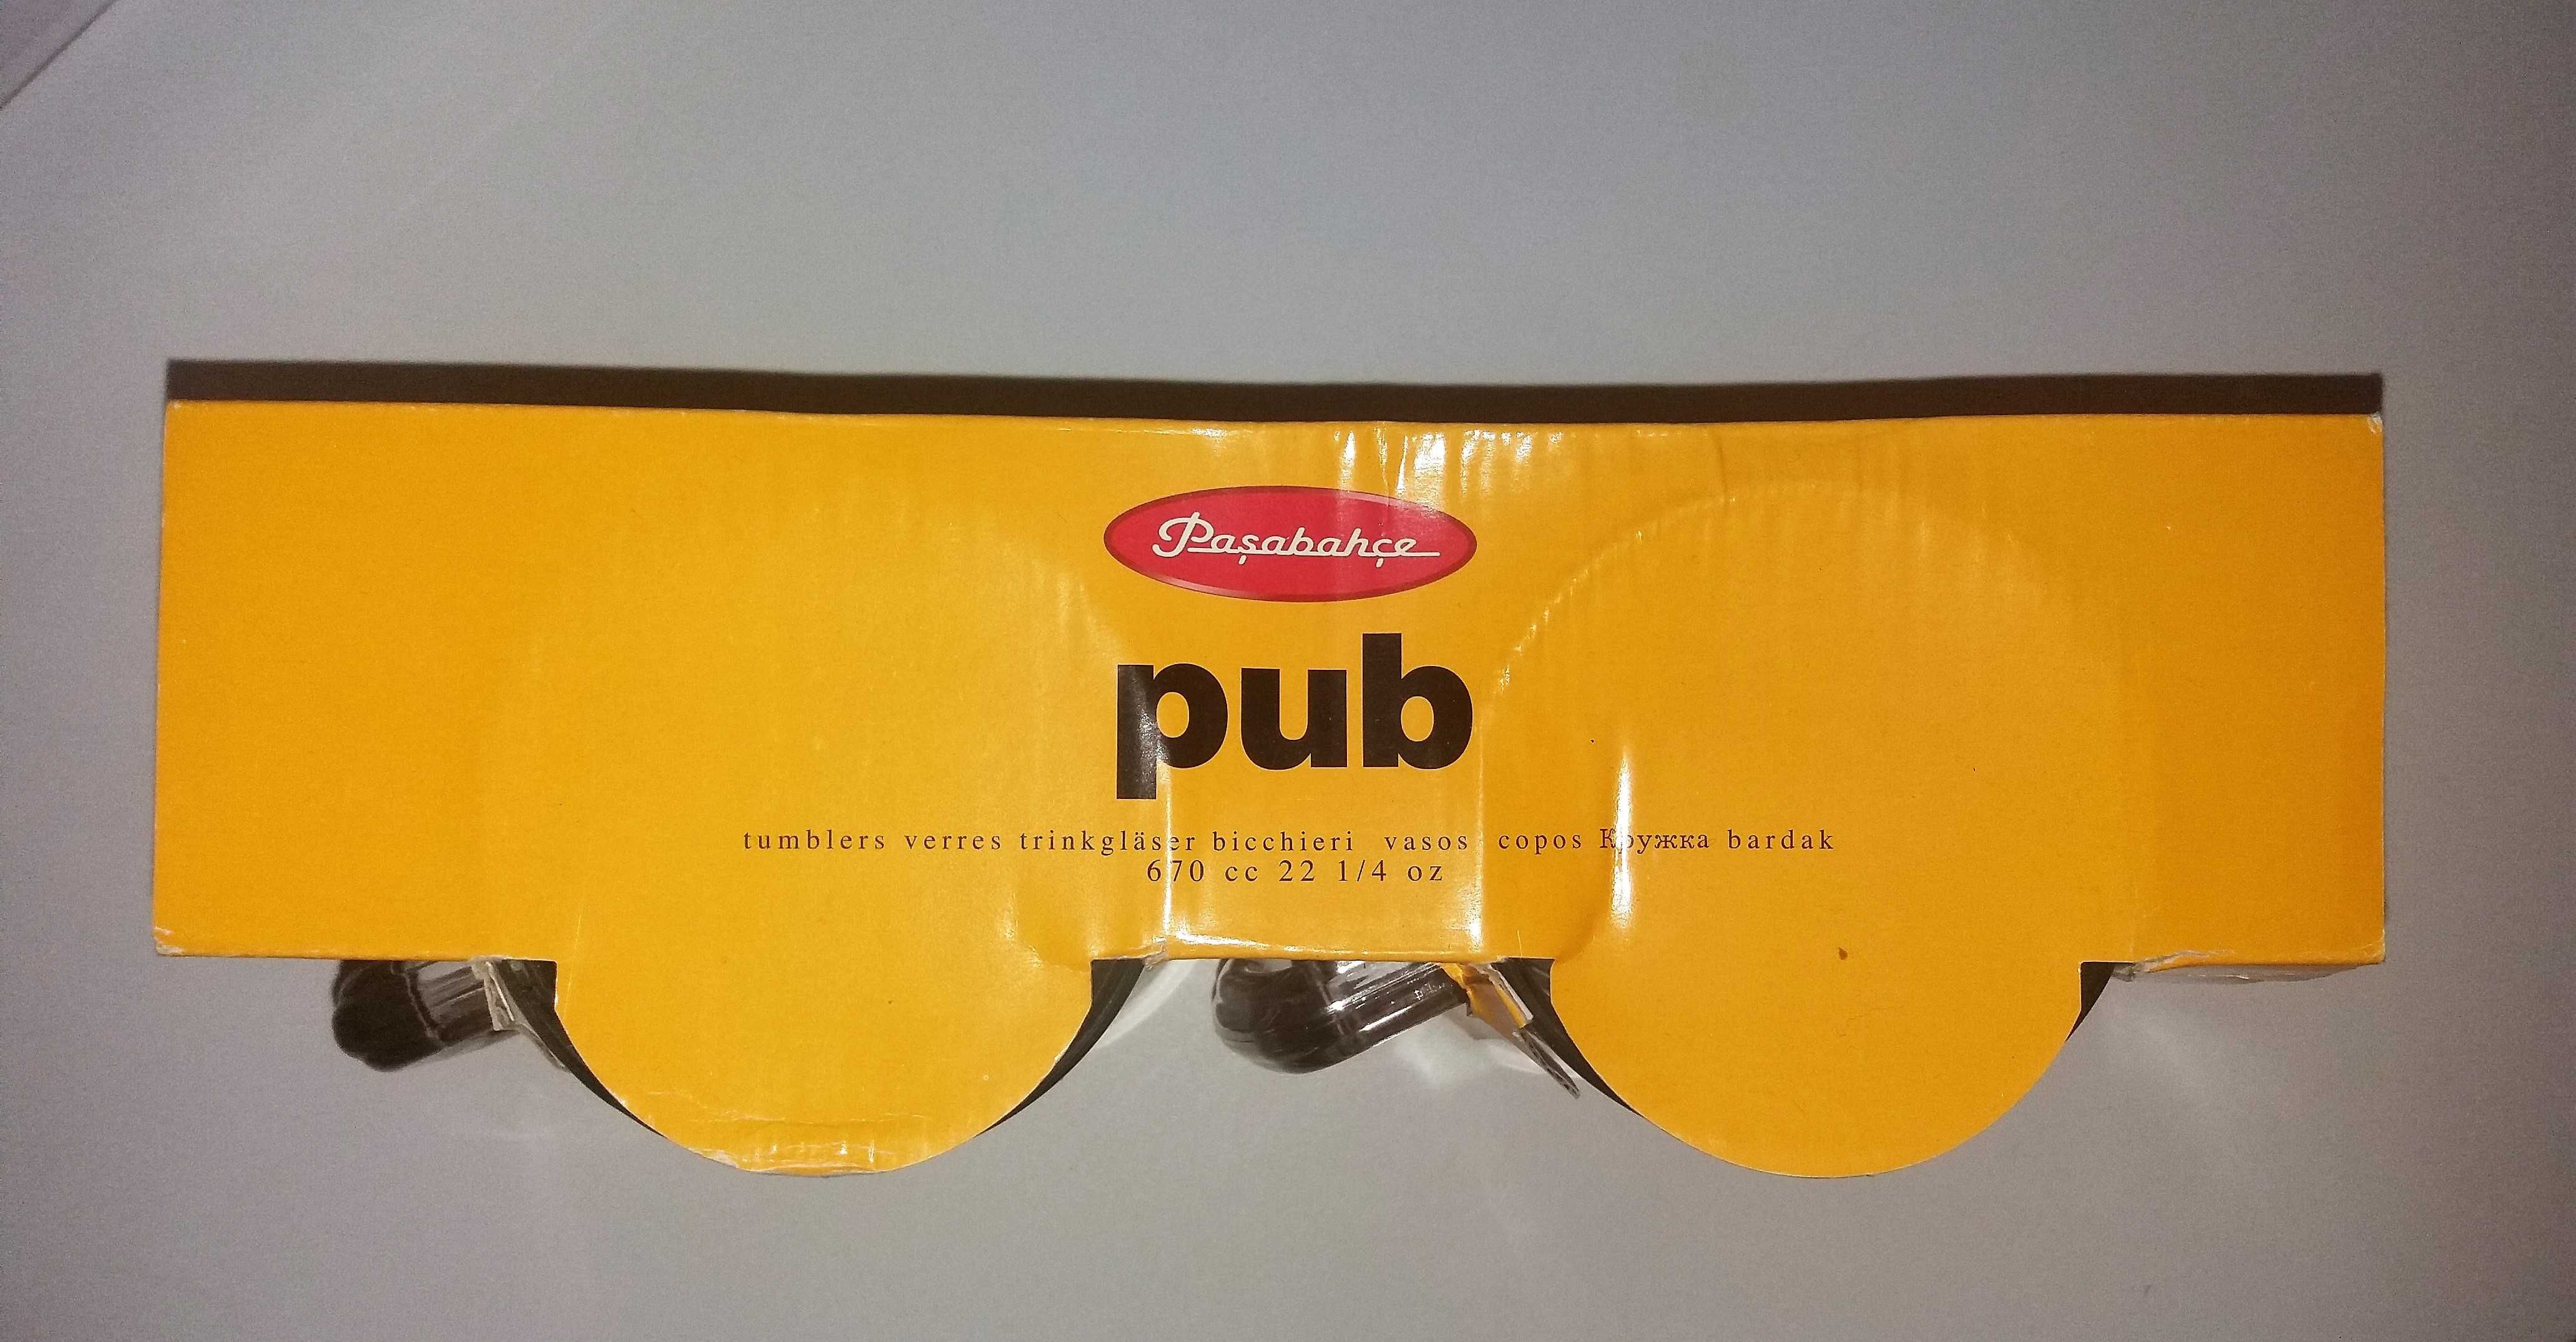 Подарочный набор "Pub" из 2-х пивных кружек новый